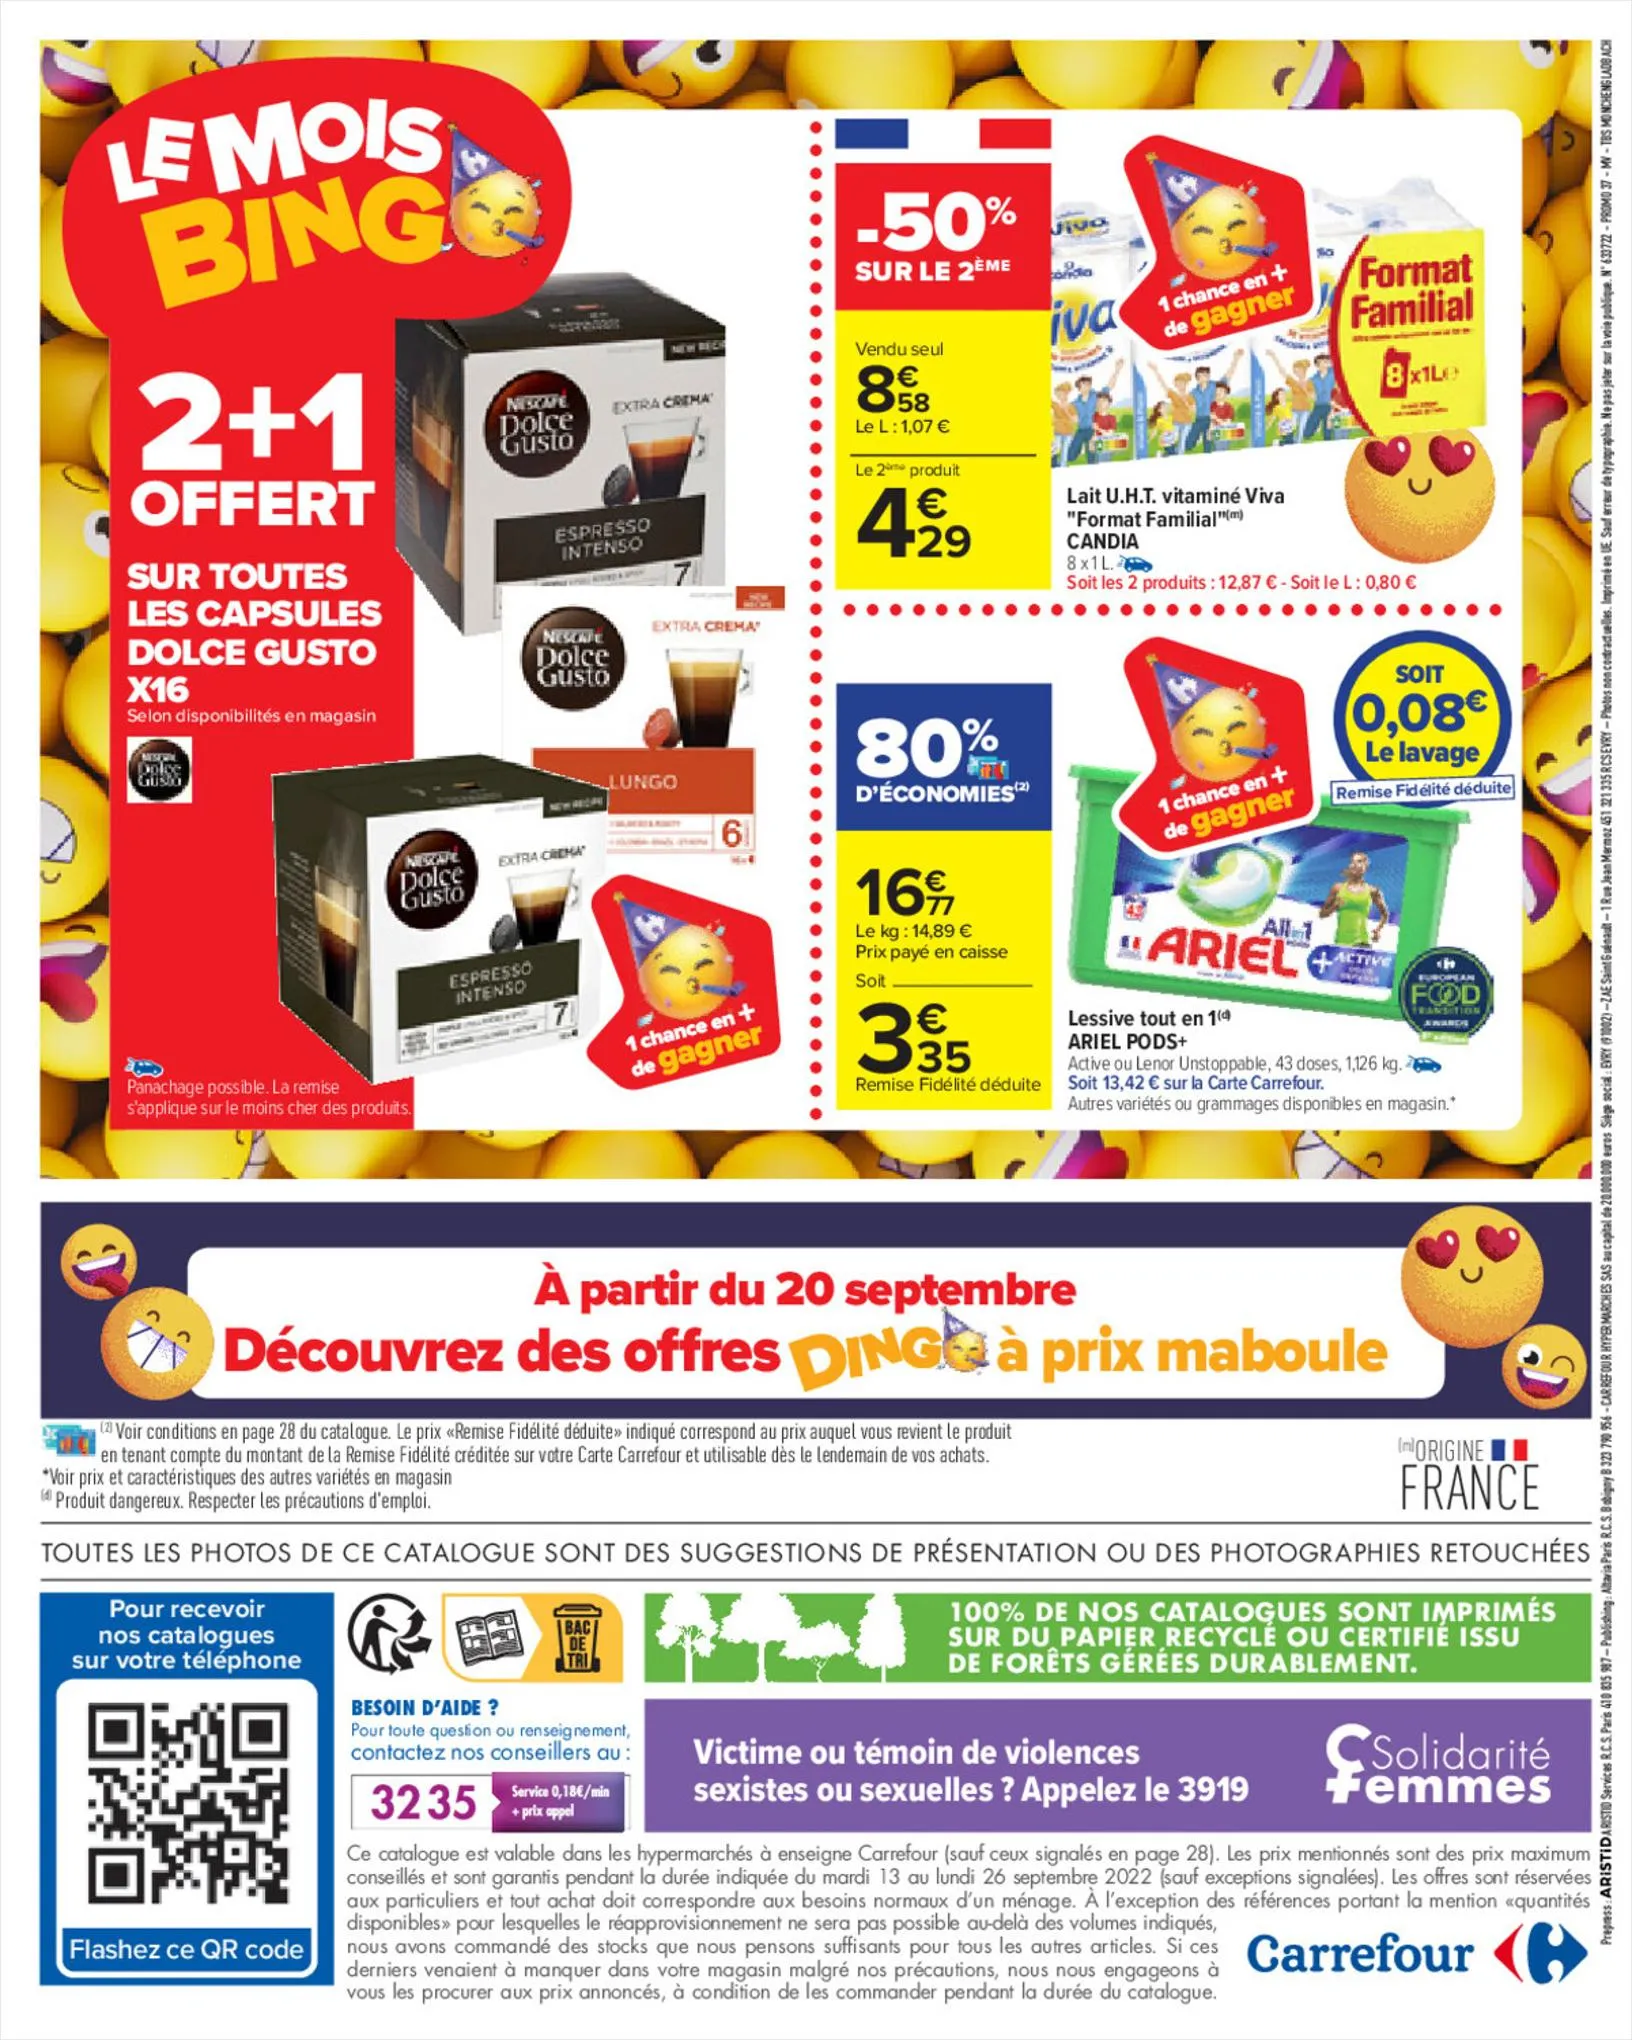 Catalogue Mois Bingo - Doublez vos euros cagnottés, page 00082